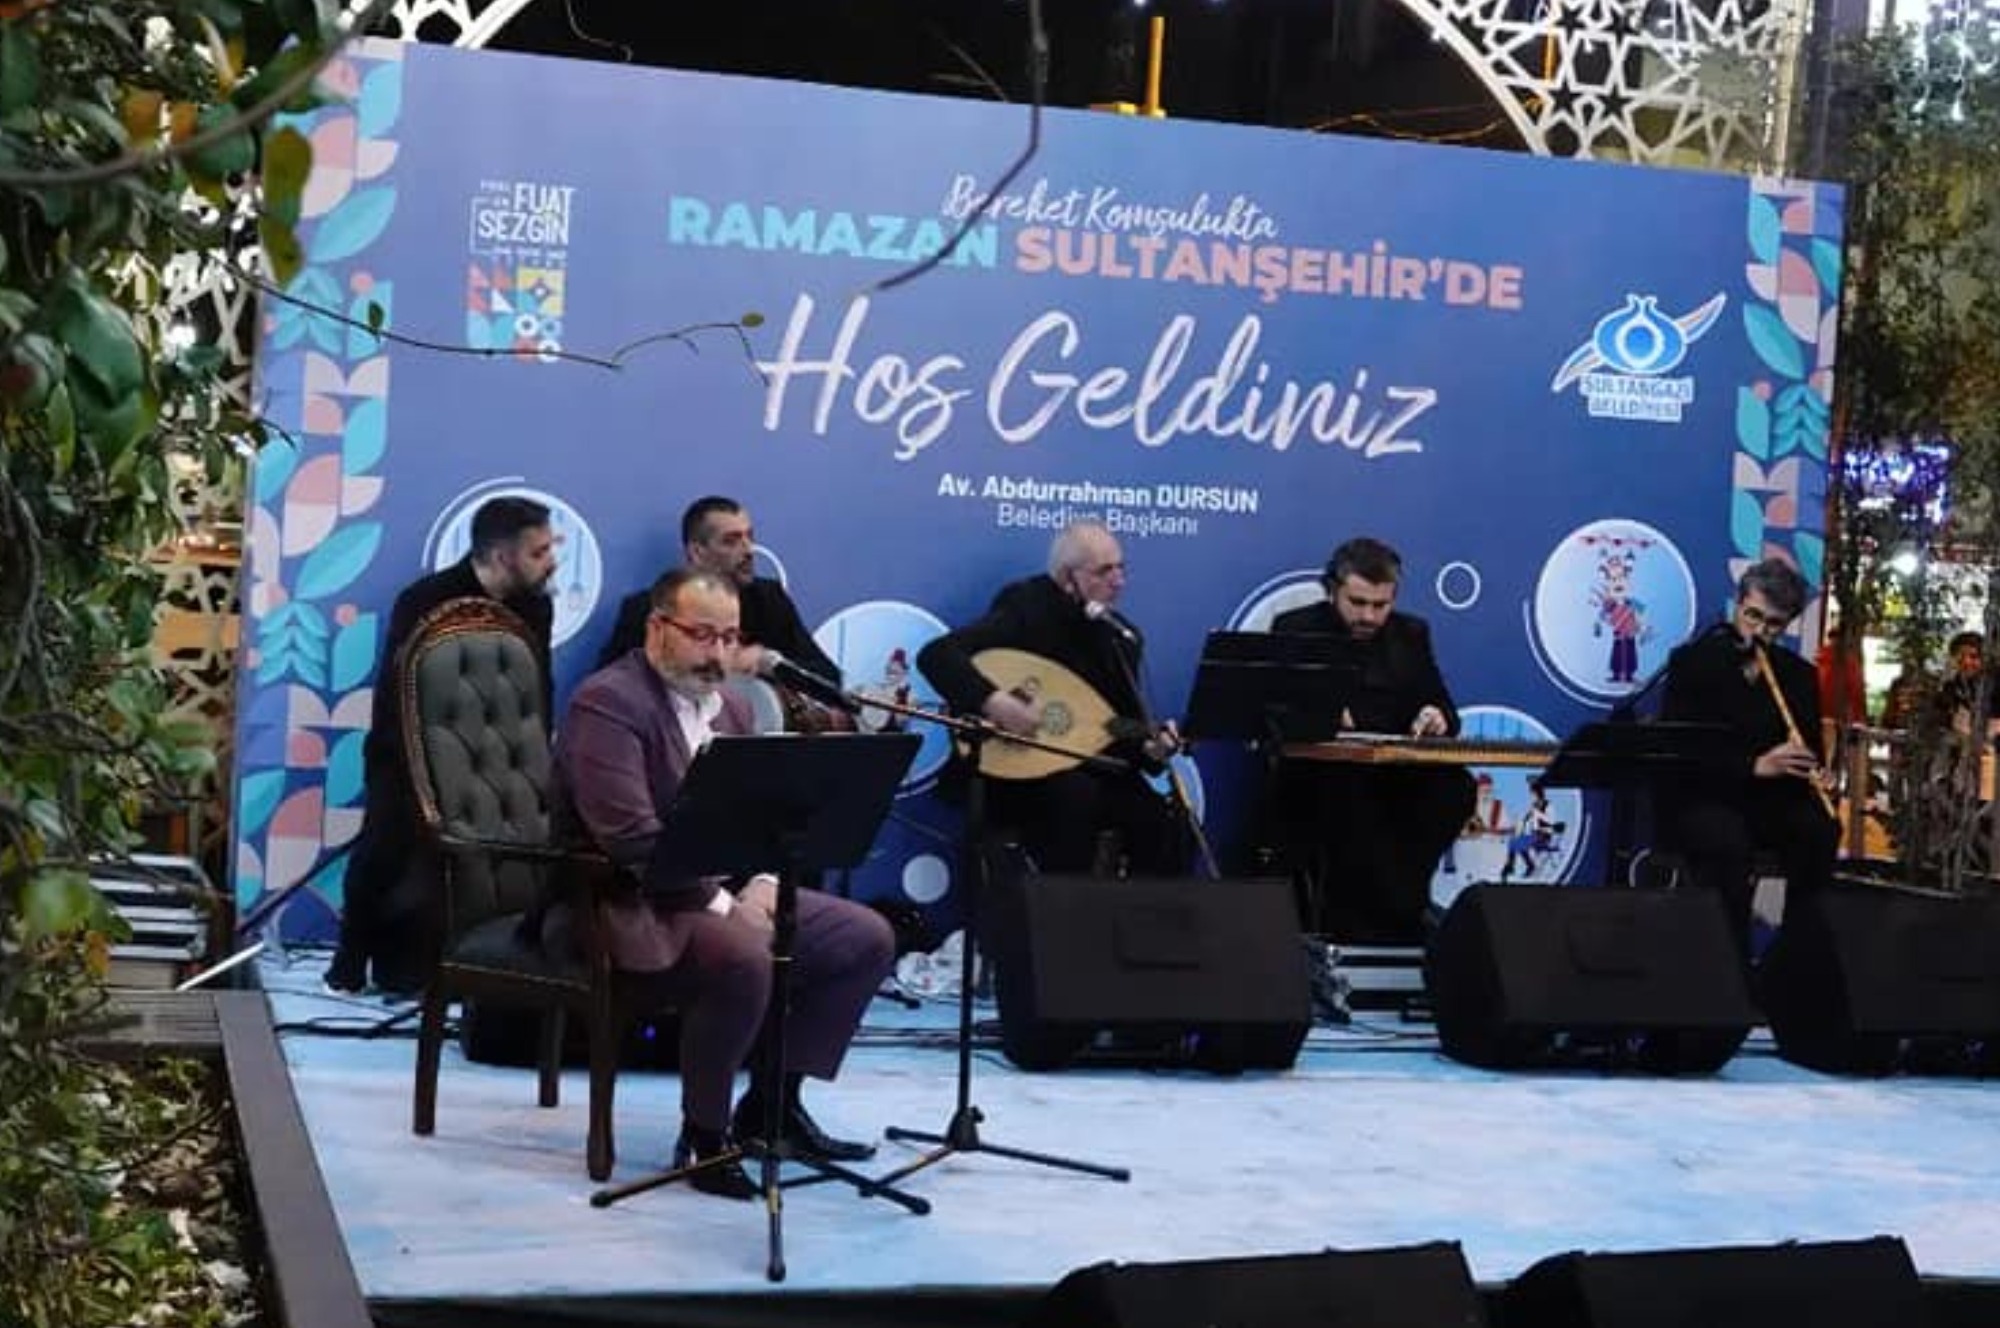 Murat Necipoğlu, gönüllere işleyen ilahilerini Sultangazi’de seslendirdi